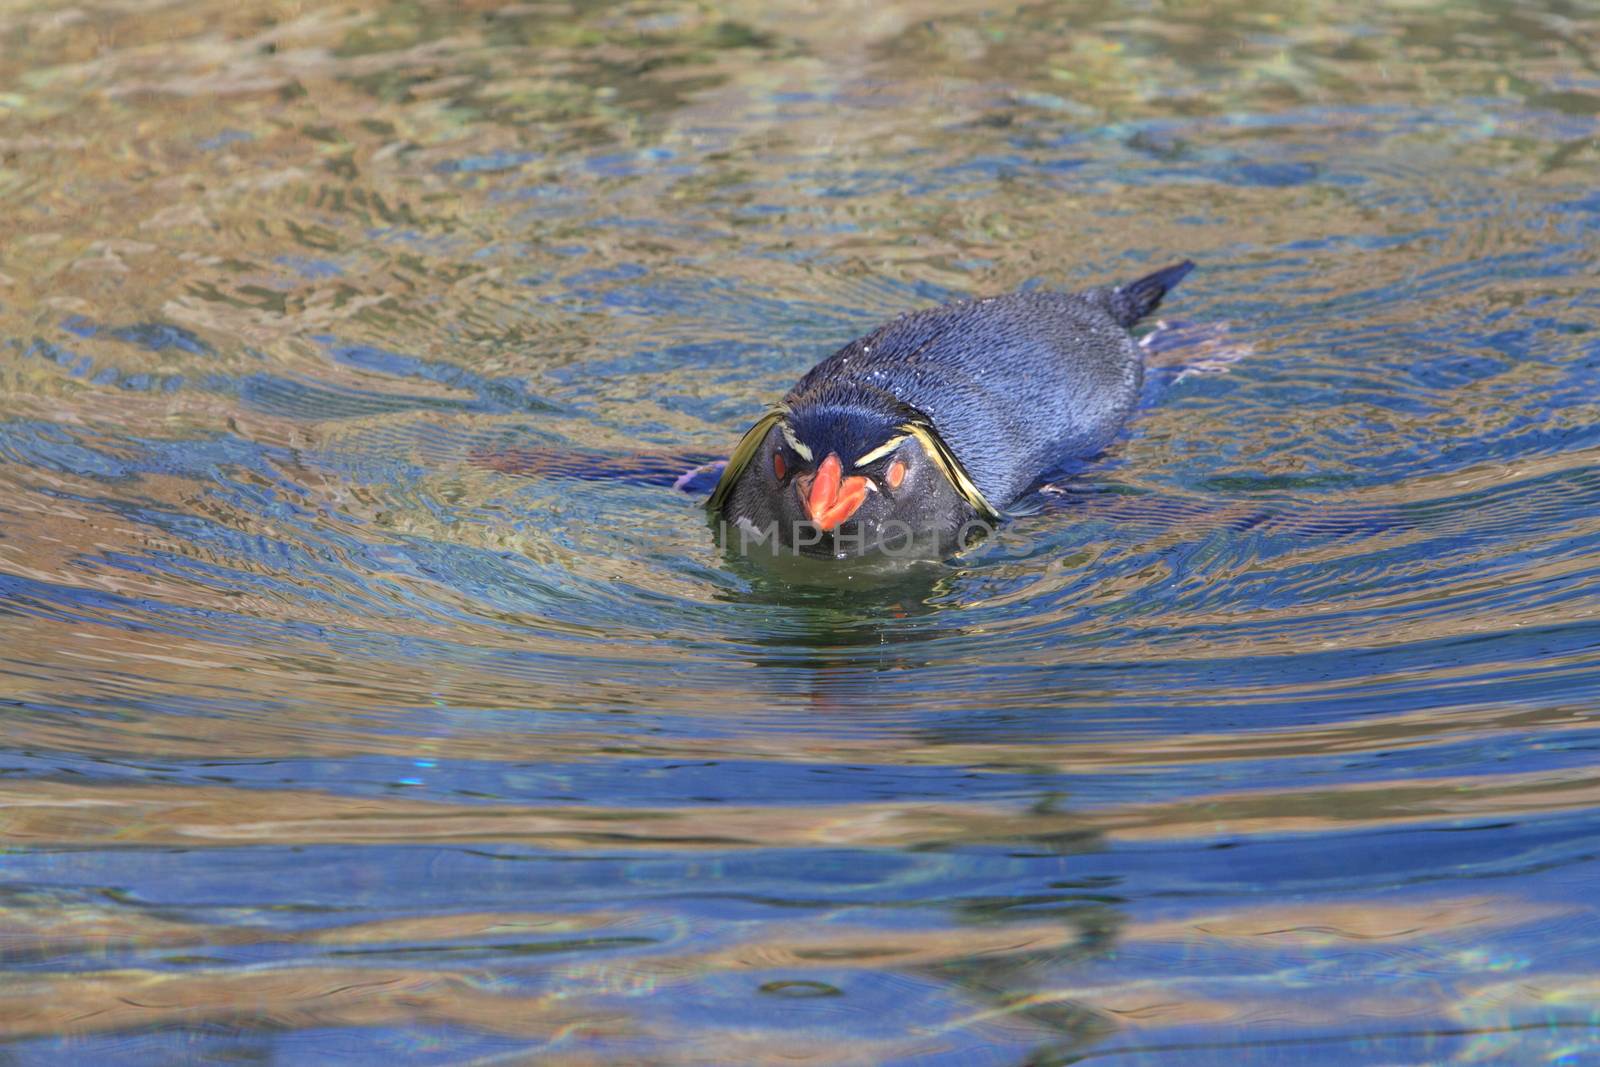 Rockhopper penguin in water